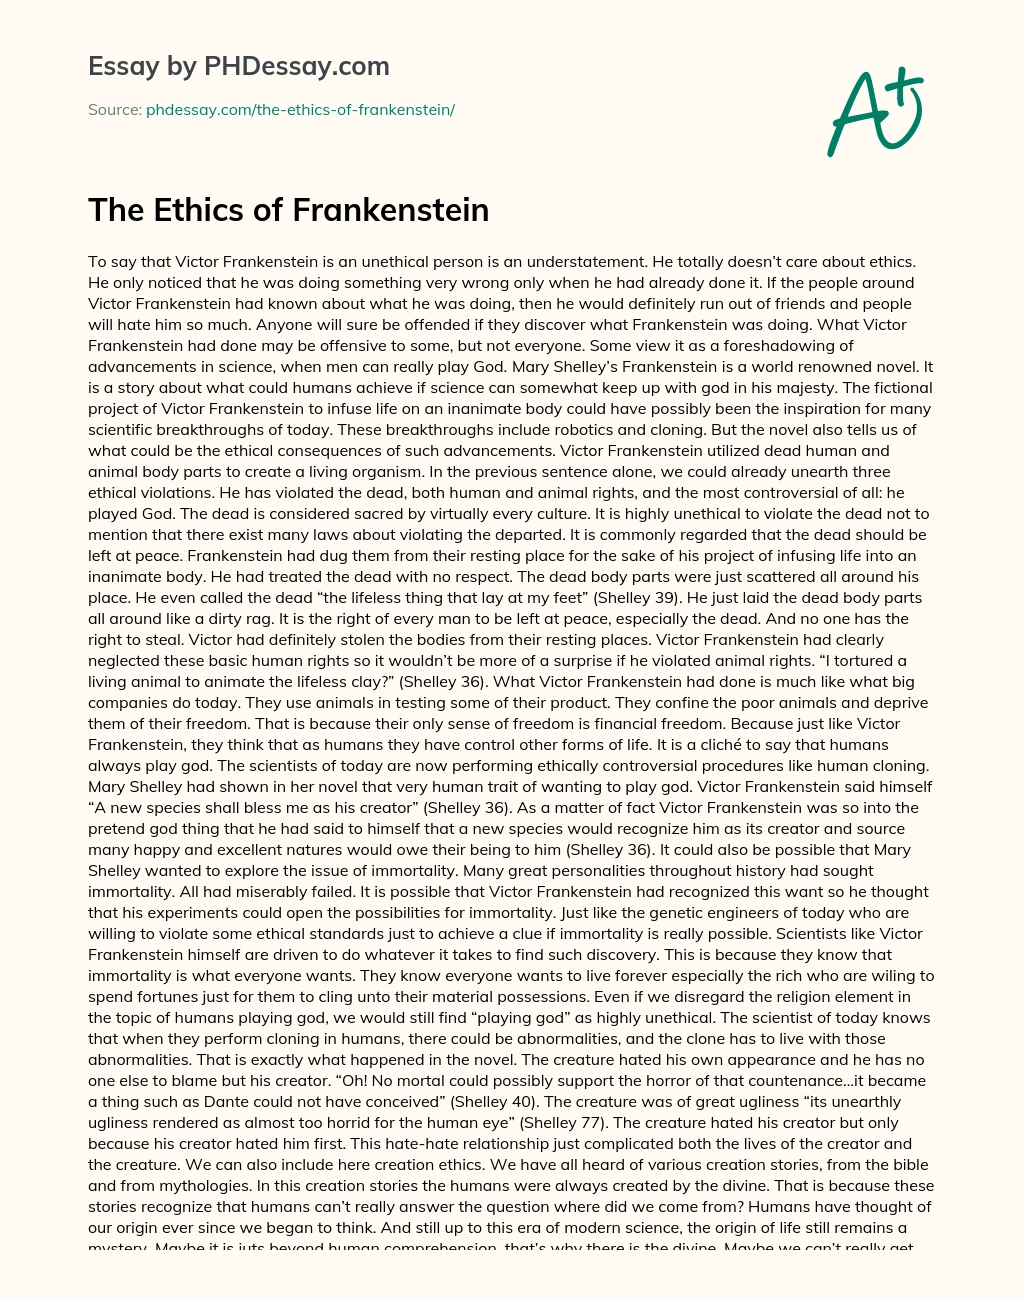 The Ethics of Frankenstein essay